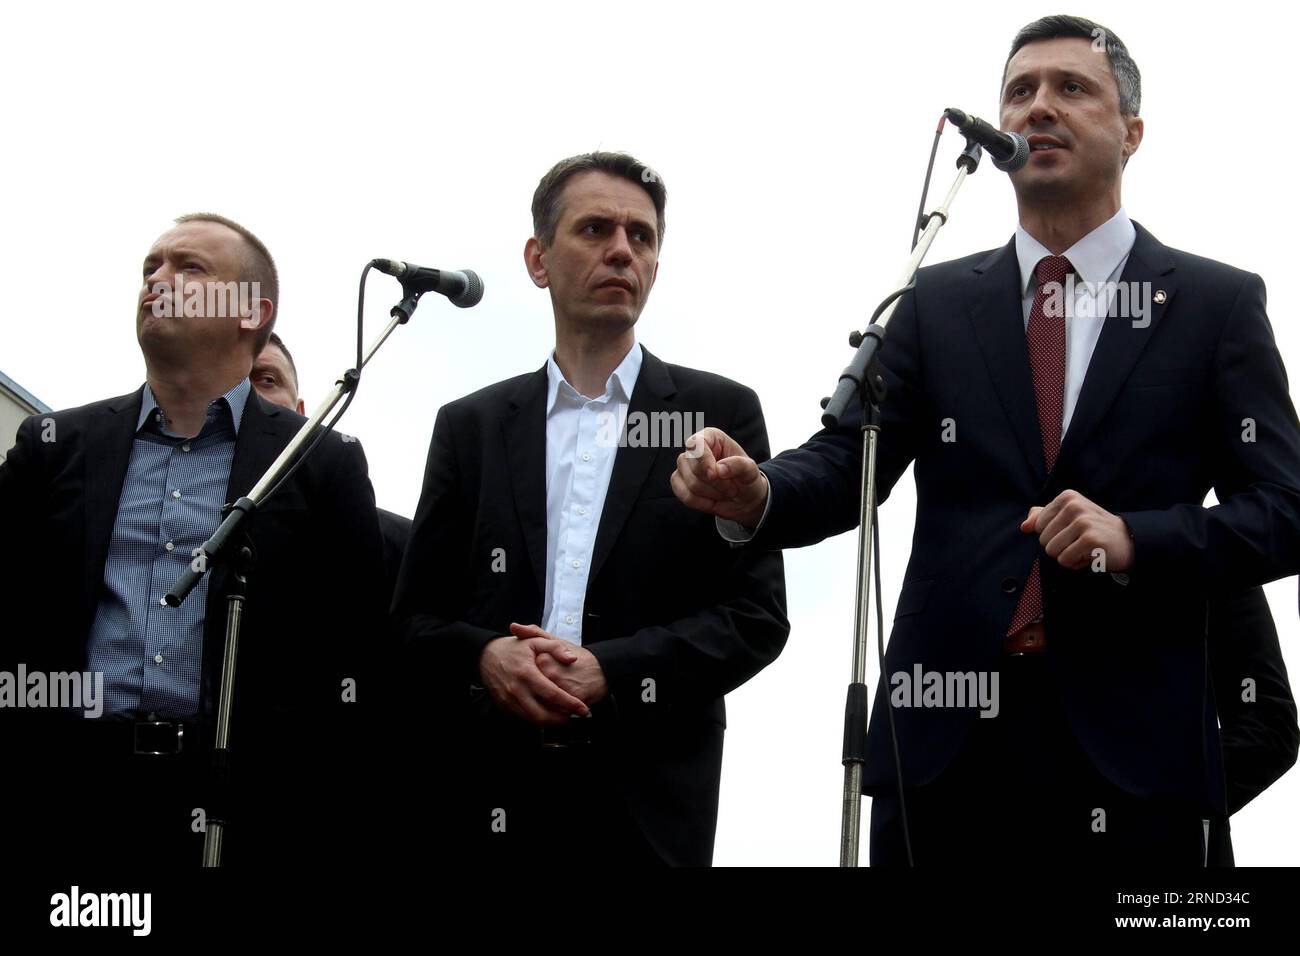 (160430) -- BELGRAD, 30. April 2016 -- Bosko Obradovic, Führer der rechtsextremen, antieuropäischen Bewegung Dveri, spricht bei einem Protest vor der Wahlkommission der Republik gegen mutmaßlichen Stimmendiebstahl bei den Wahlen am 24. April in Belgrad, Serbien, am 30. April 2016. Mehrere tausend Anhänger der Oppositionsparteien protestierten am Samstag gegen den angeblichen Stimmendiebstahl bei den Parlamentswahlen am 24. April durch die Koalition um die Siegerpartei Progressive, die diese Behauptungen kategorisch widerlegte. SERBIEN-BELGRAD-WAHLEN-PROTEST NemanjaxCabric PUBLICATIONx Stockfoto